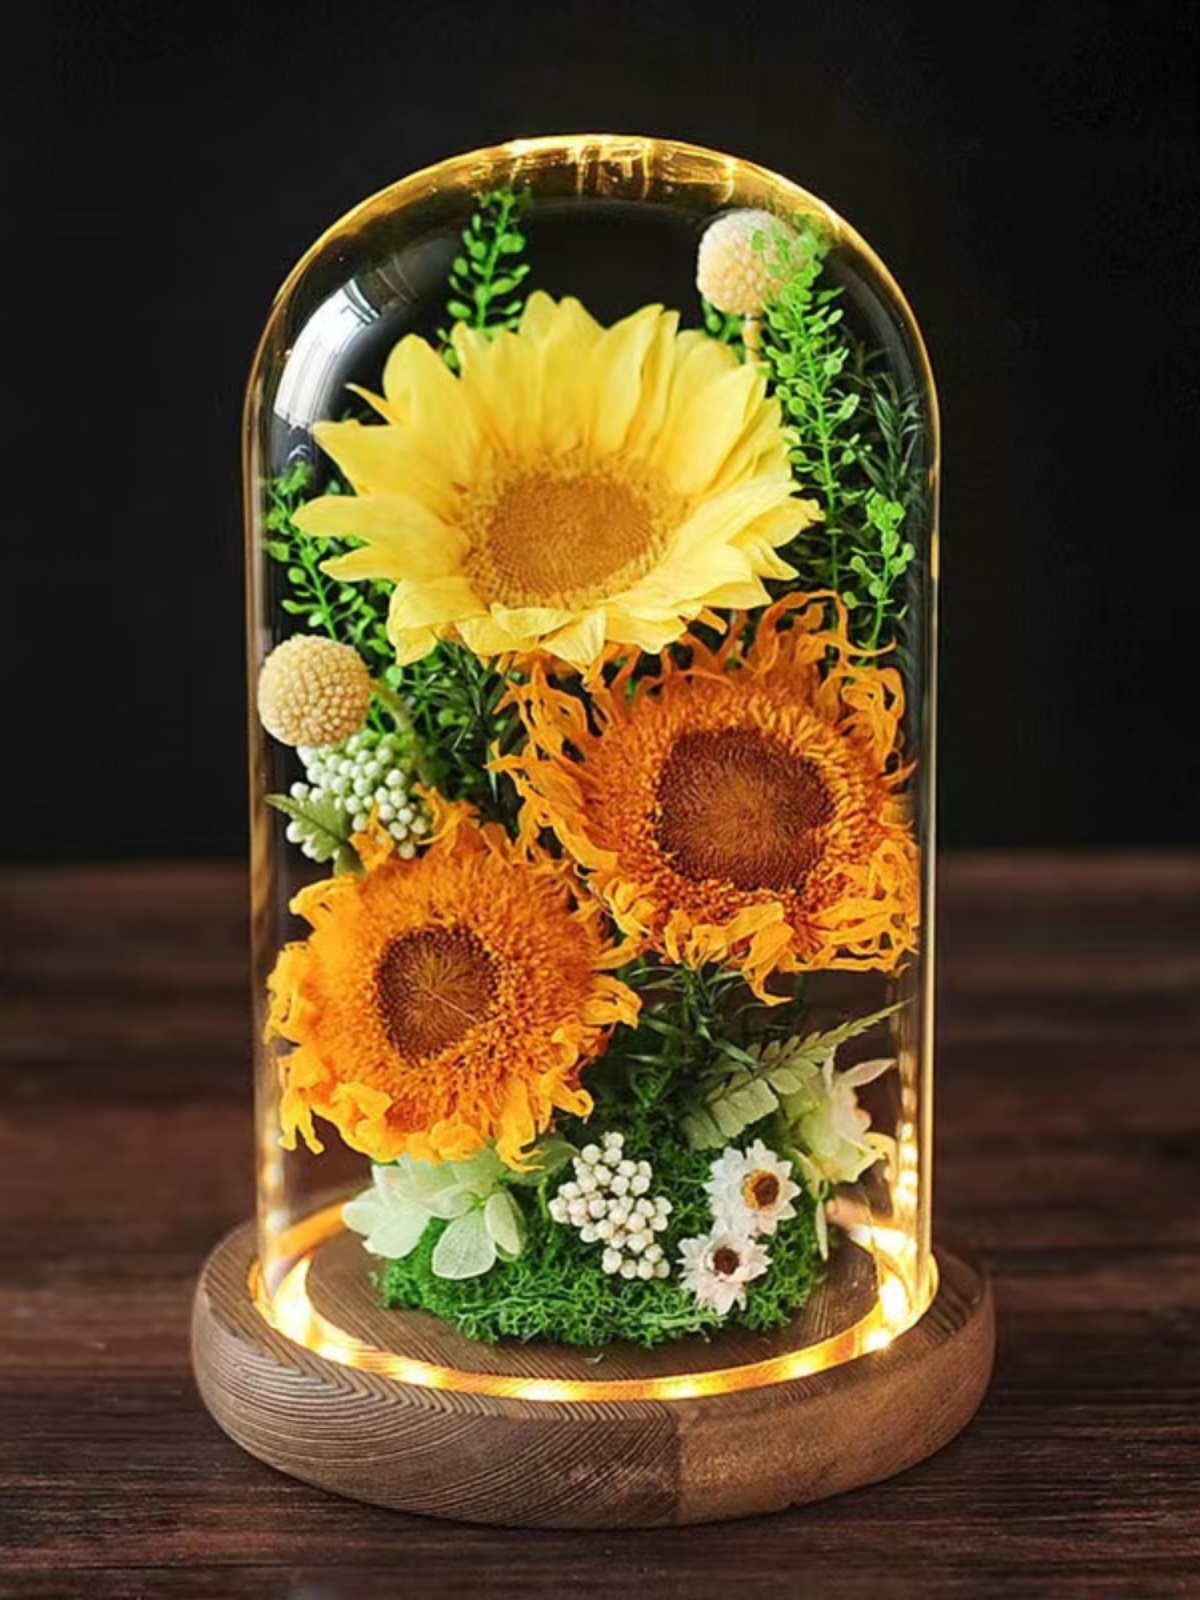 創意玻璃罩永生真花向日葵擺件送禮佳品點綴家居生活 (7.1折)